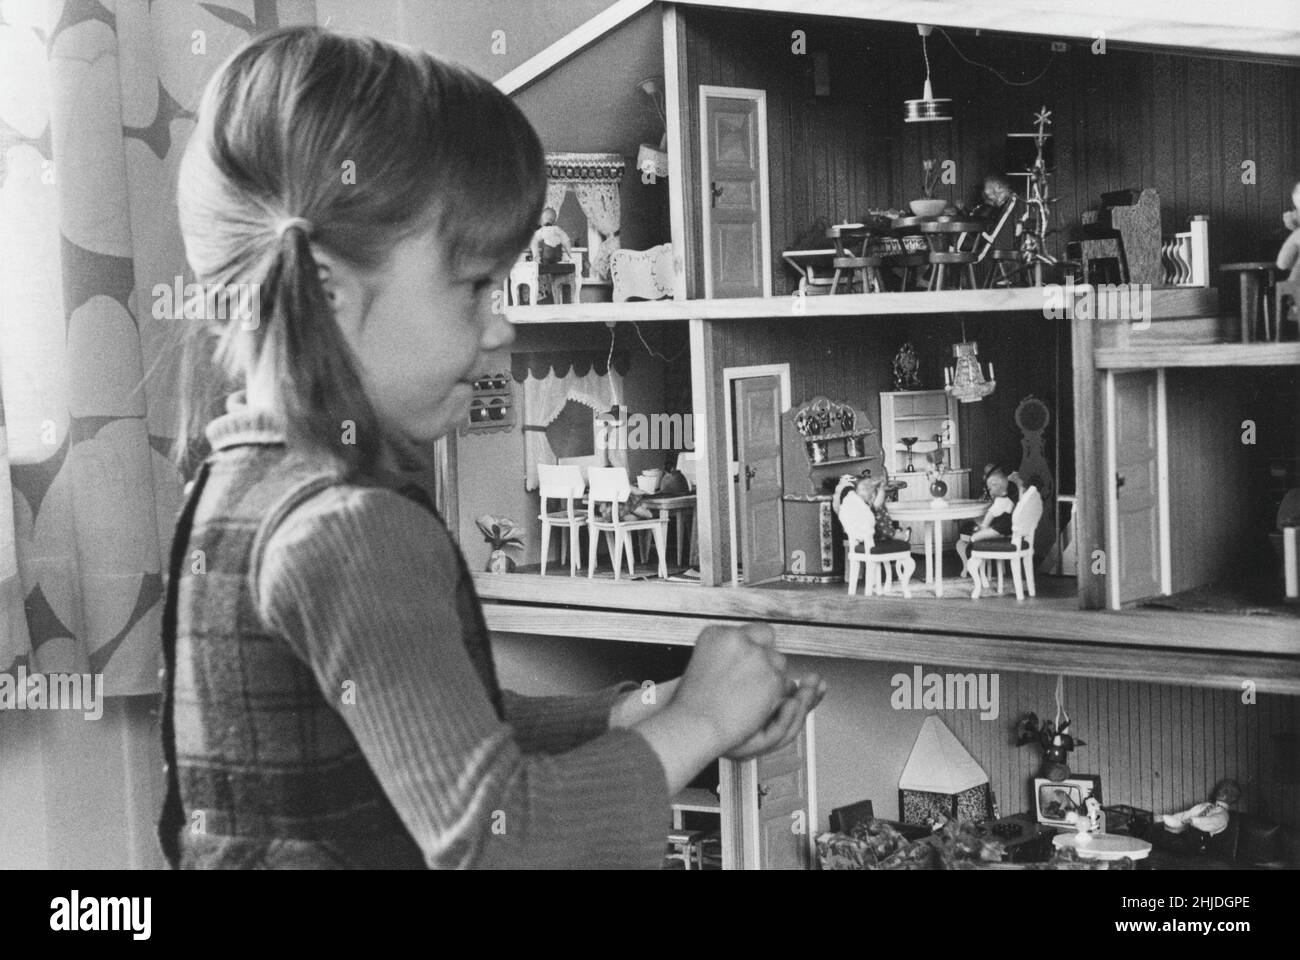 Jouer dans le 1970s.Une petite fille joue avec sa maison de poupées qui est décorée avec de beaux meubles et poupées.Suède 1973 Banque D'Images